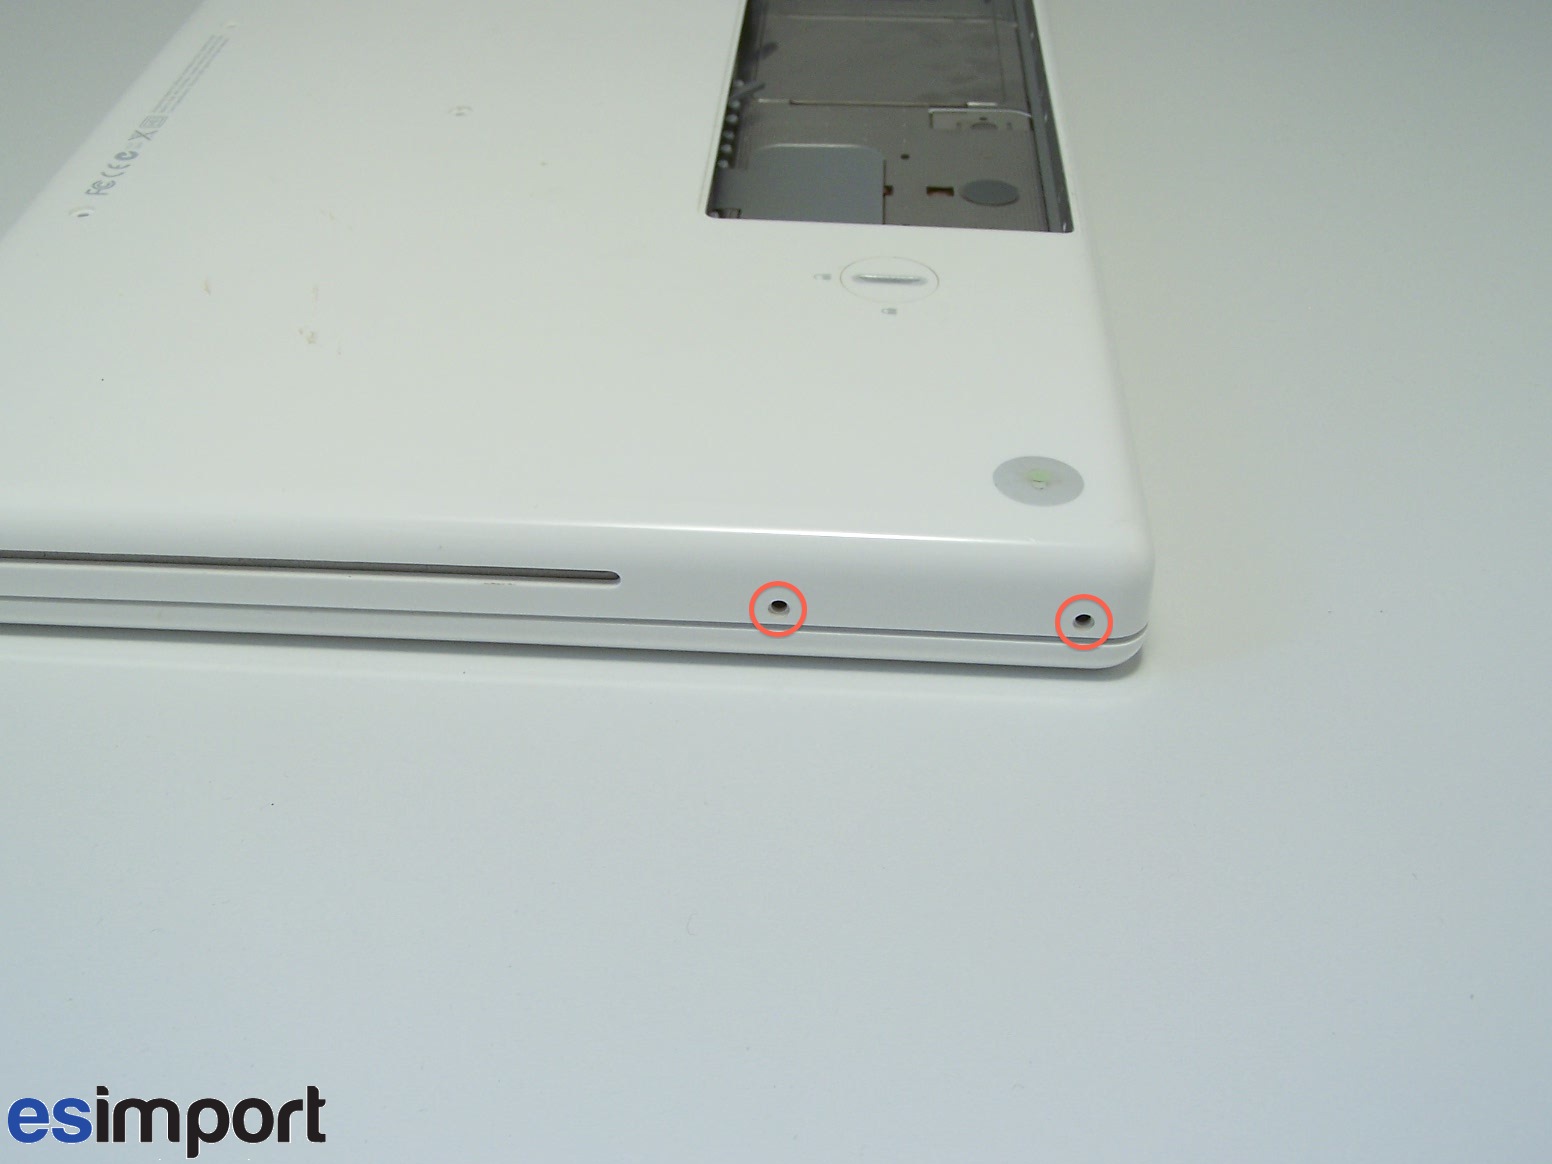 Chargeur Pour MacBook Blanc 1ère Génération A1181